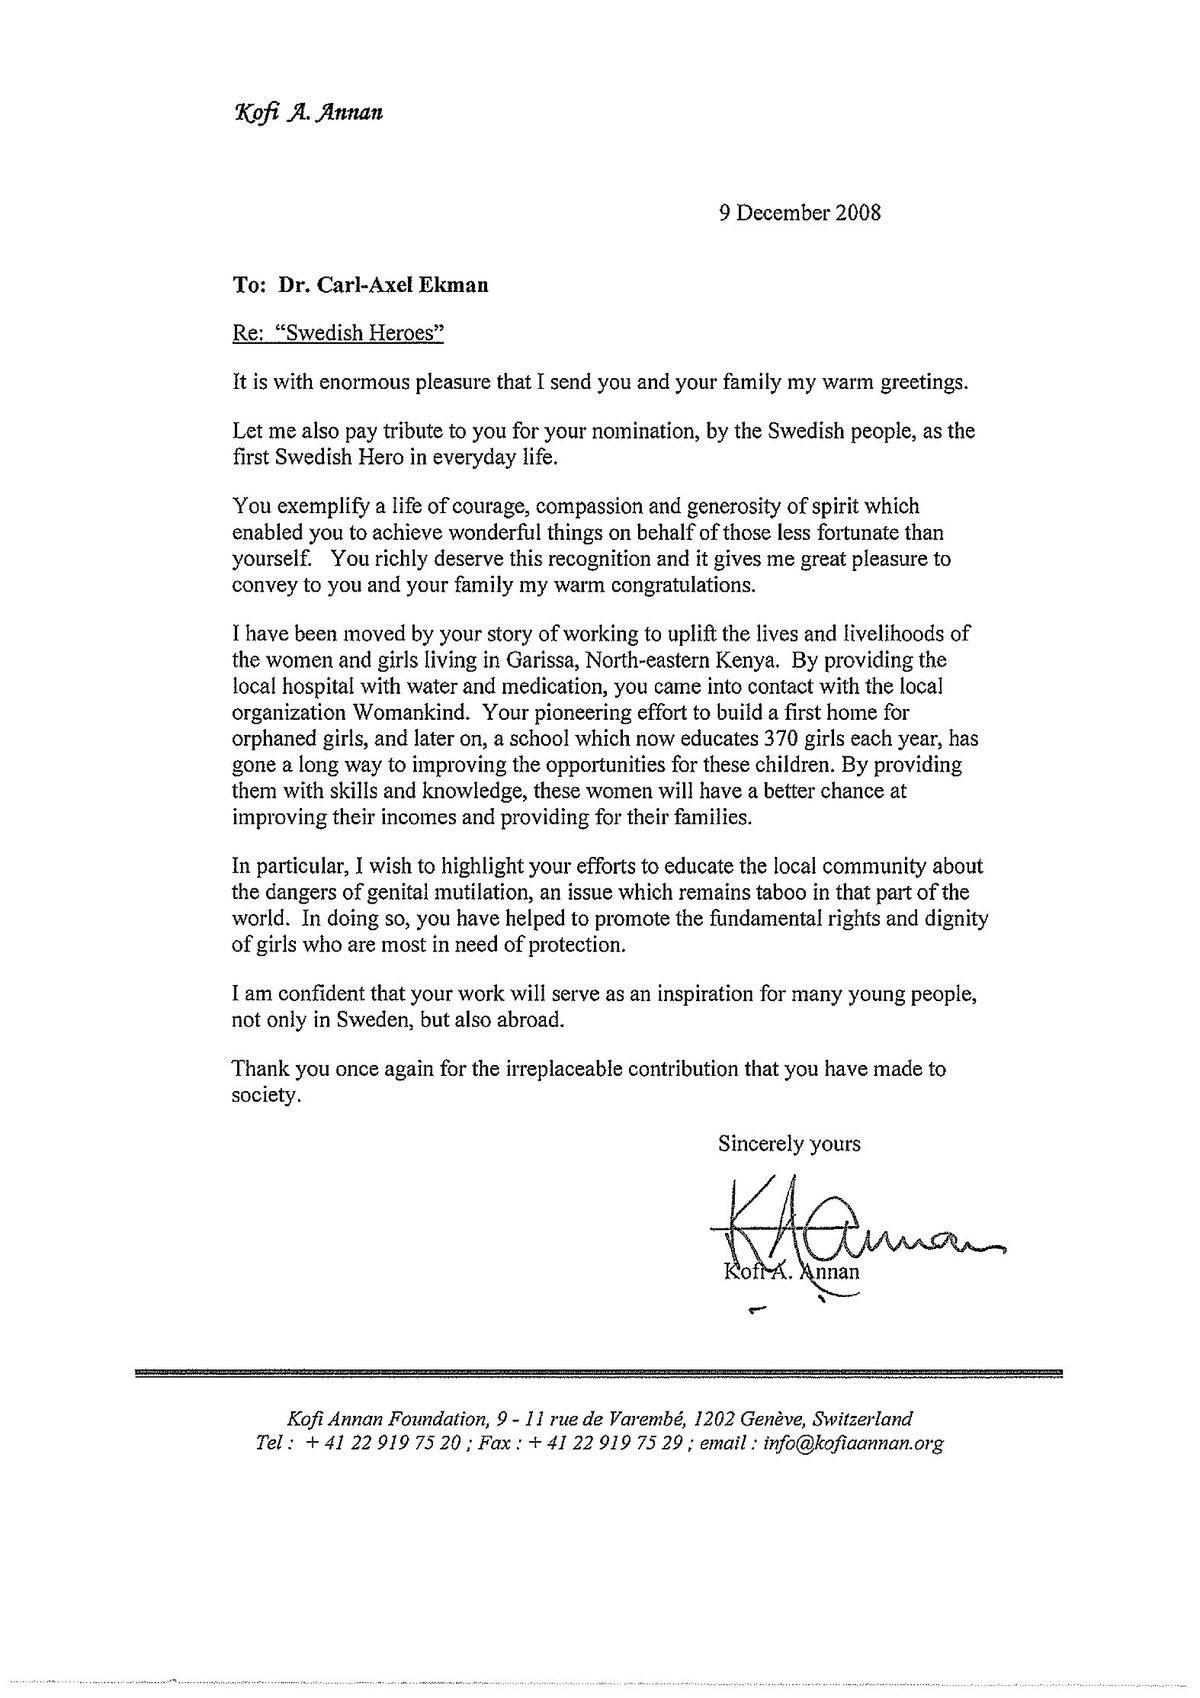 Kofi Annans brev till Carl-Axel. Klicka på bilden för en större version.